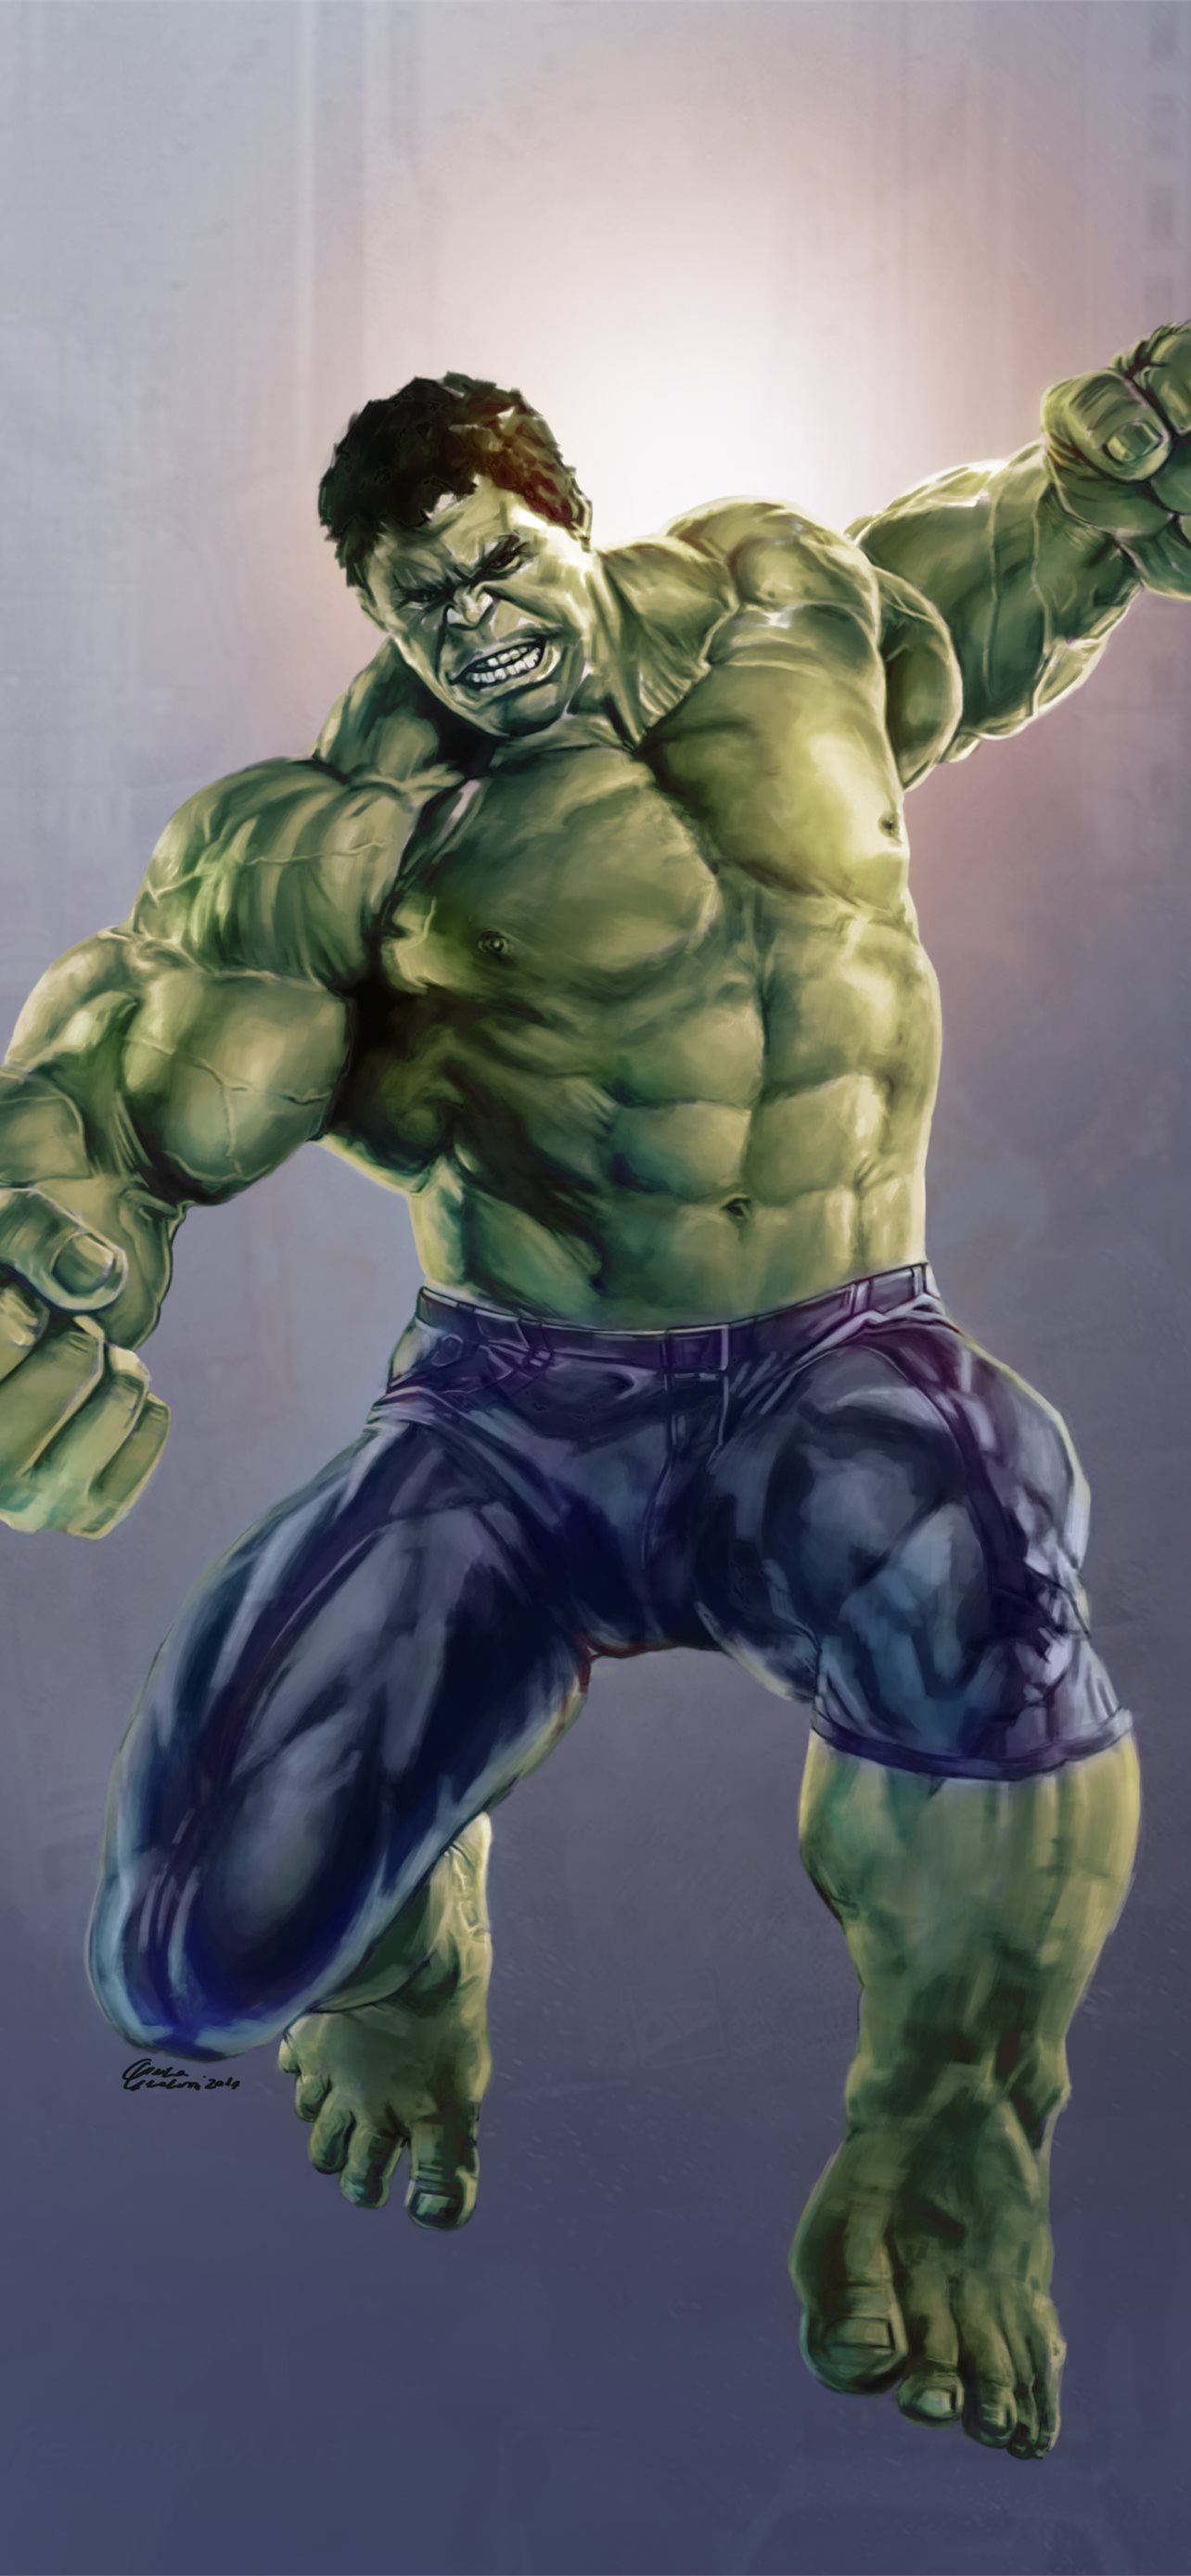 Hulk Punch Wallpaper Download | MobCup-sgquangbinhtourist.com.vn